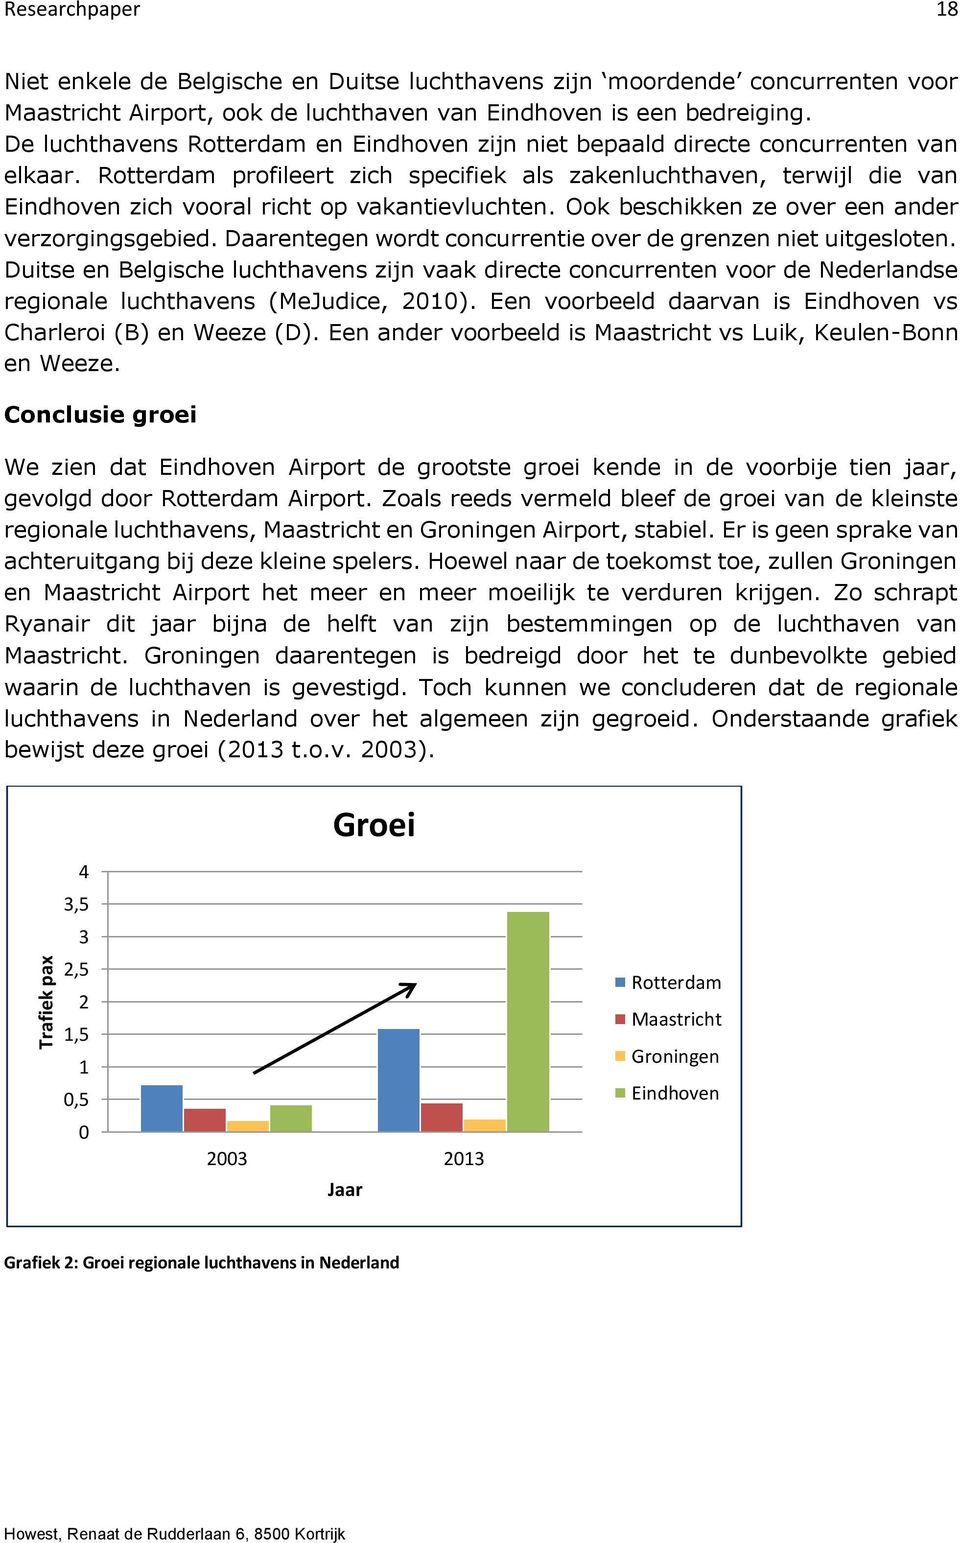 Rotterdam profileert zich specifiek als zakenluchthaven, terwijl die van Eindhoven zich vooral richt op vakantievluchten. Ook beschikken ze over een ander verzorgingsgebied.